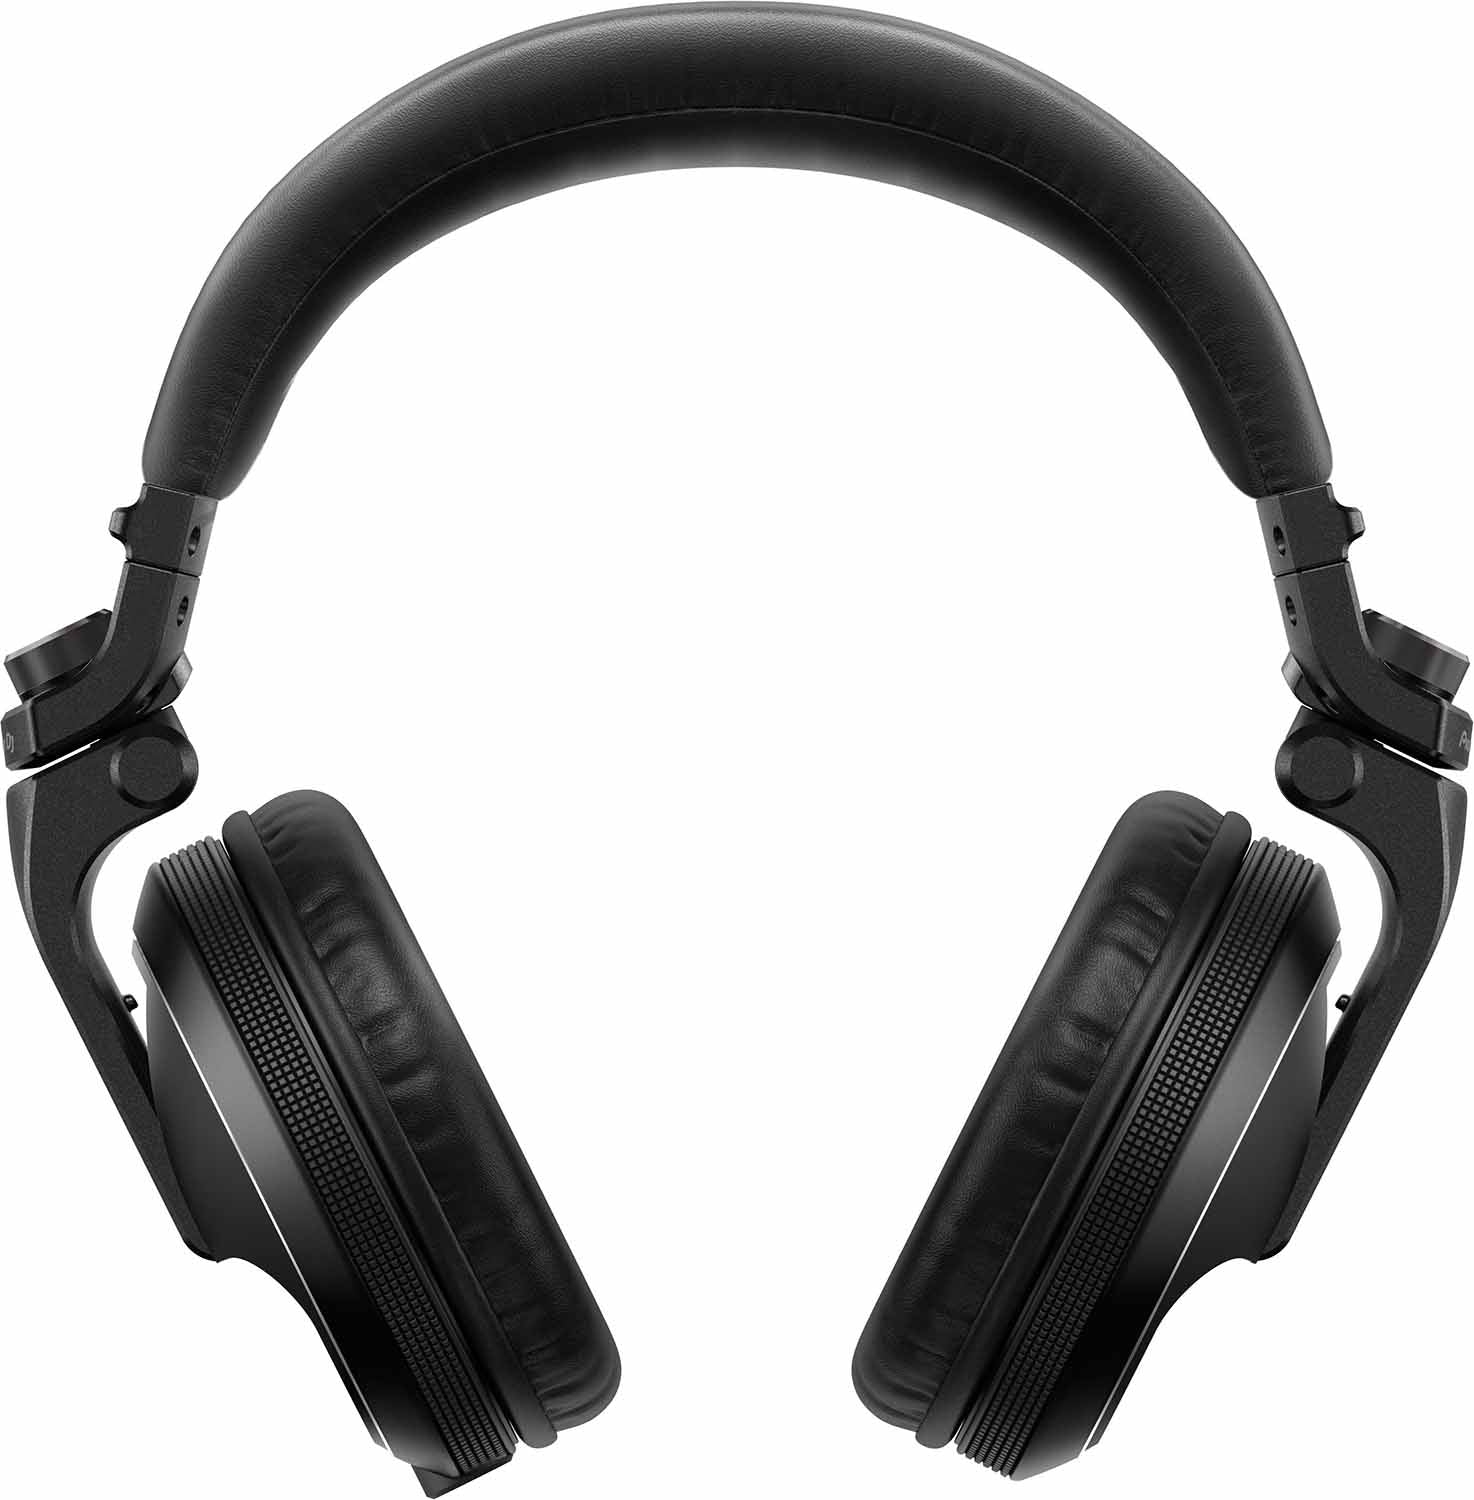 Pioneer DJ HDJ-X5-K Headphones (Black) Pioneer DJ